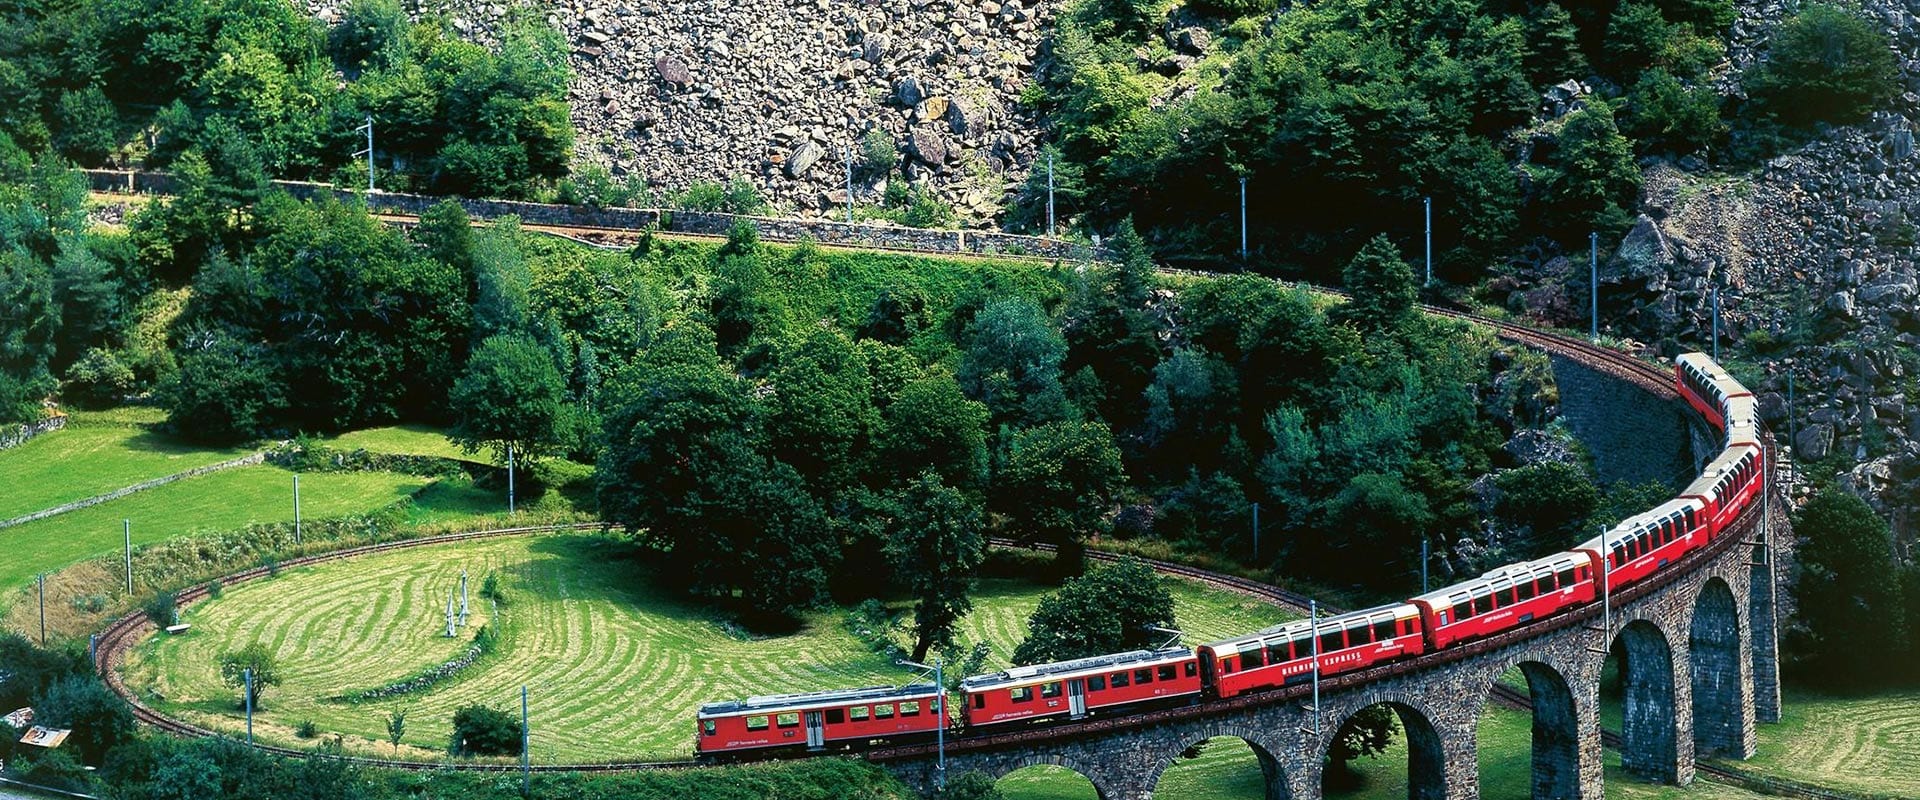 Trem panorâmico Bernina Express